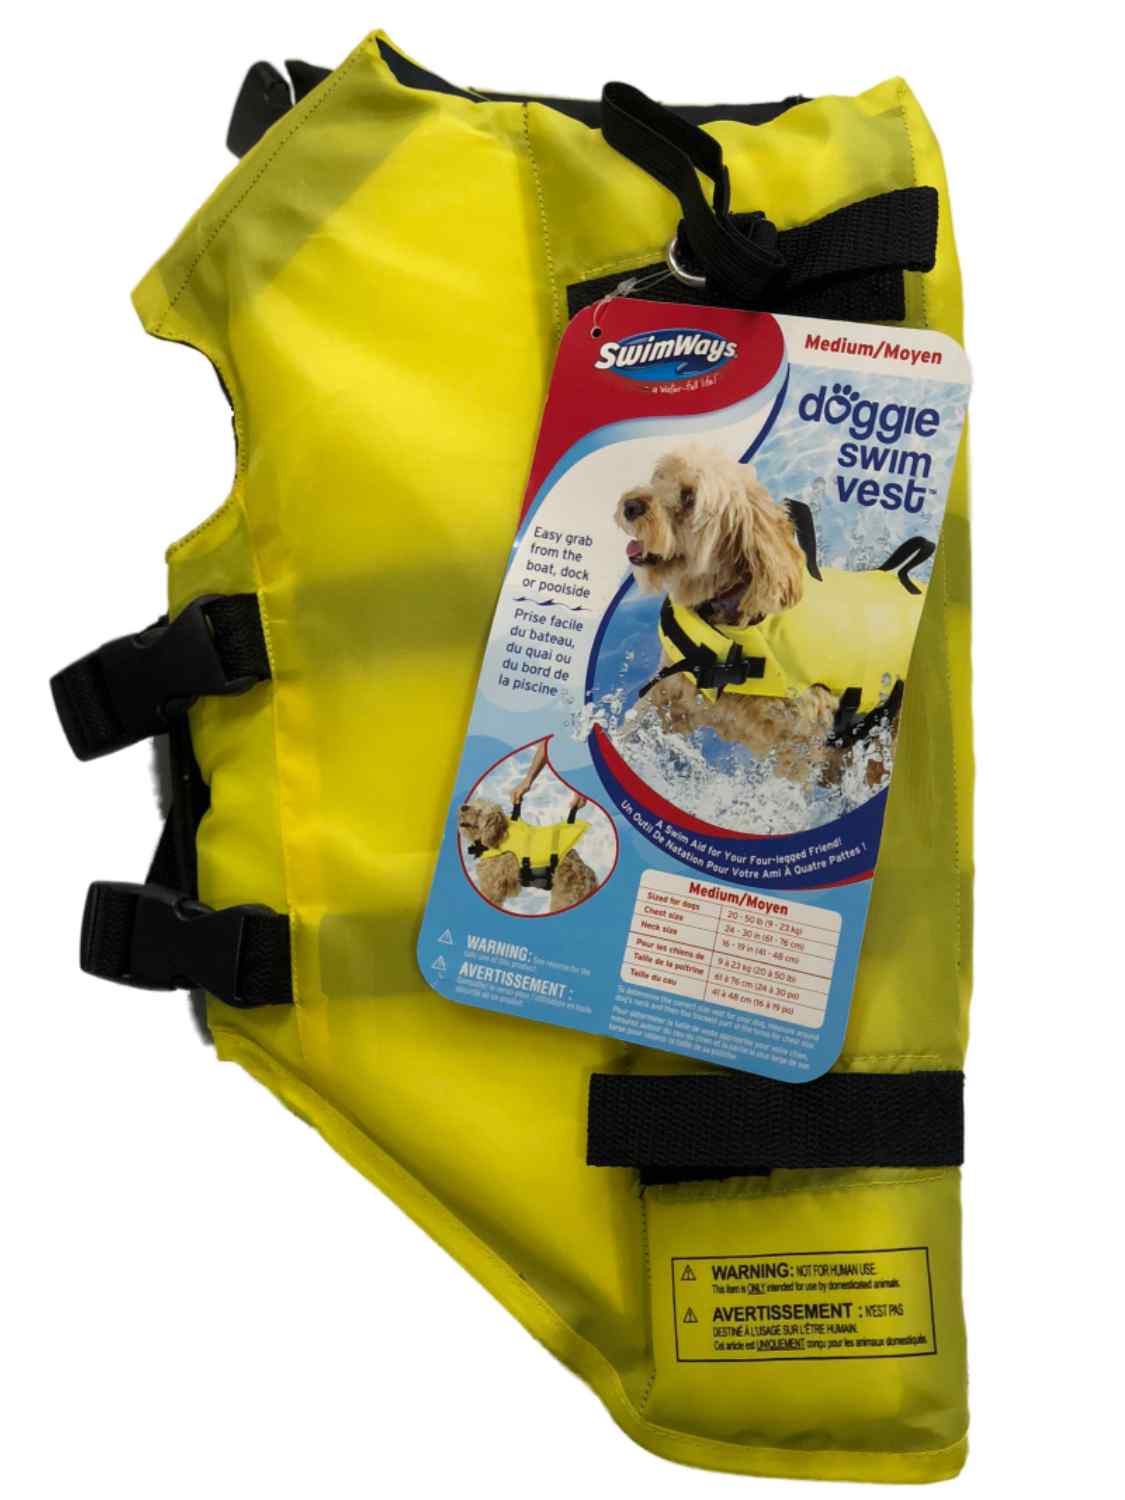 Swimways Dog Life Jacket Yellow Doggie Swim Vest Small 10-20 Pounds